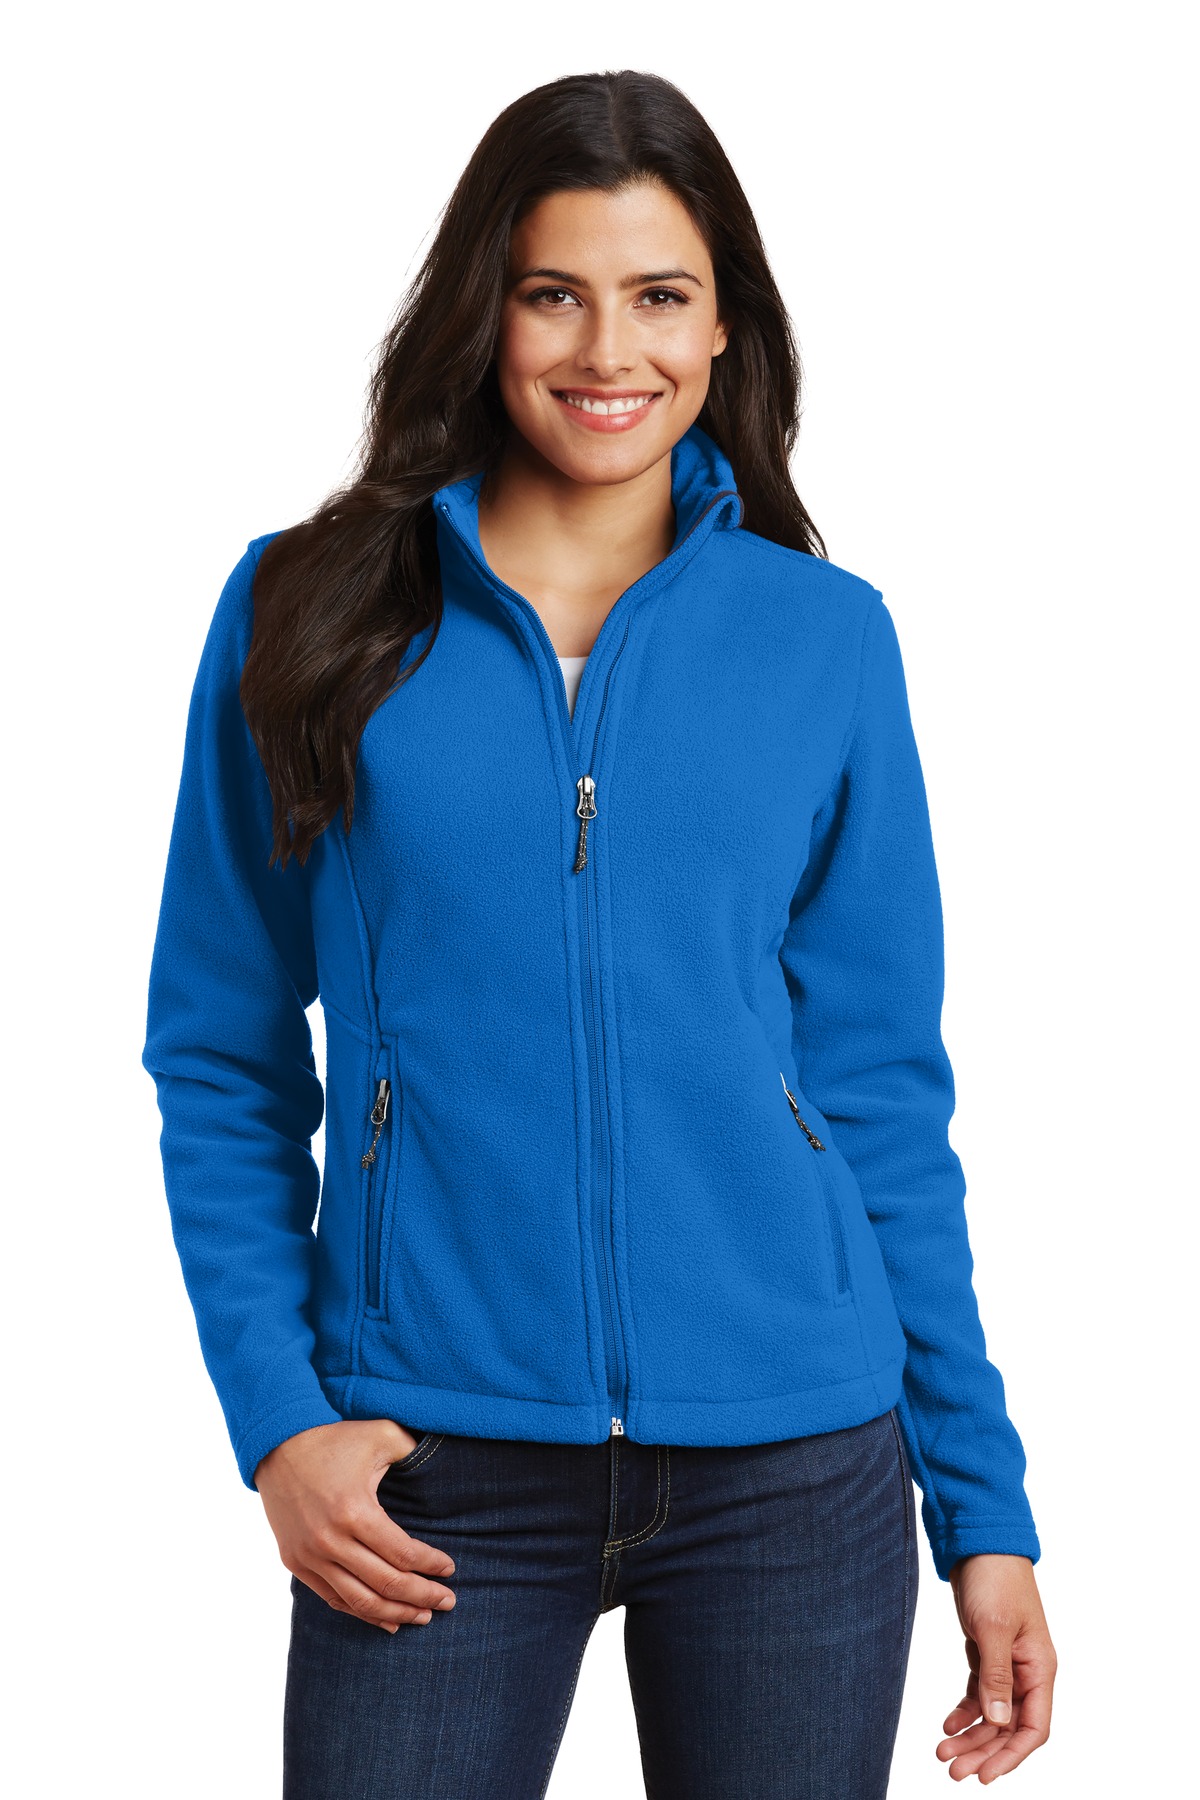 Port Authority L217 Ladies Value Fleece Jacket - Skydiver Blue - 2XL